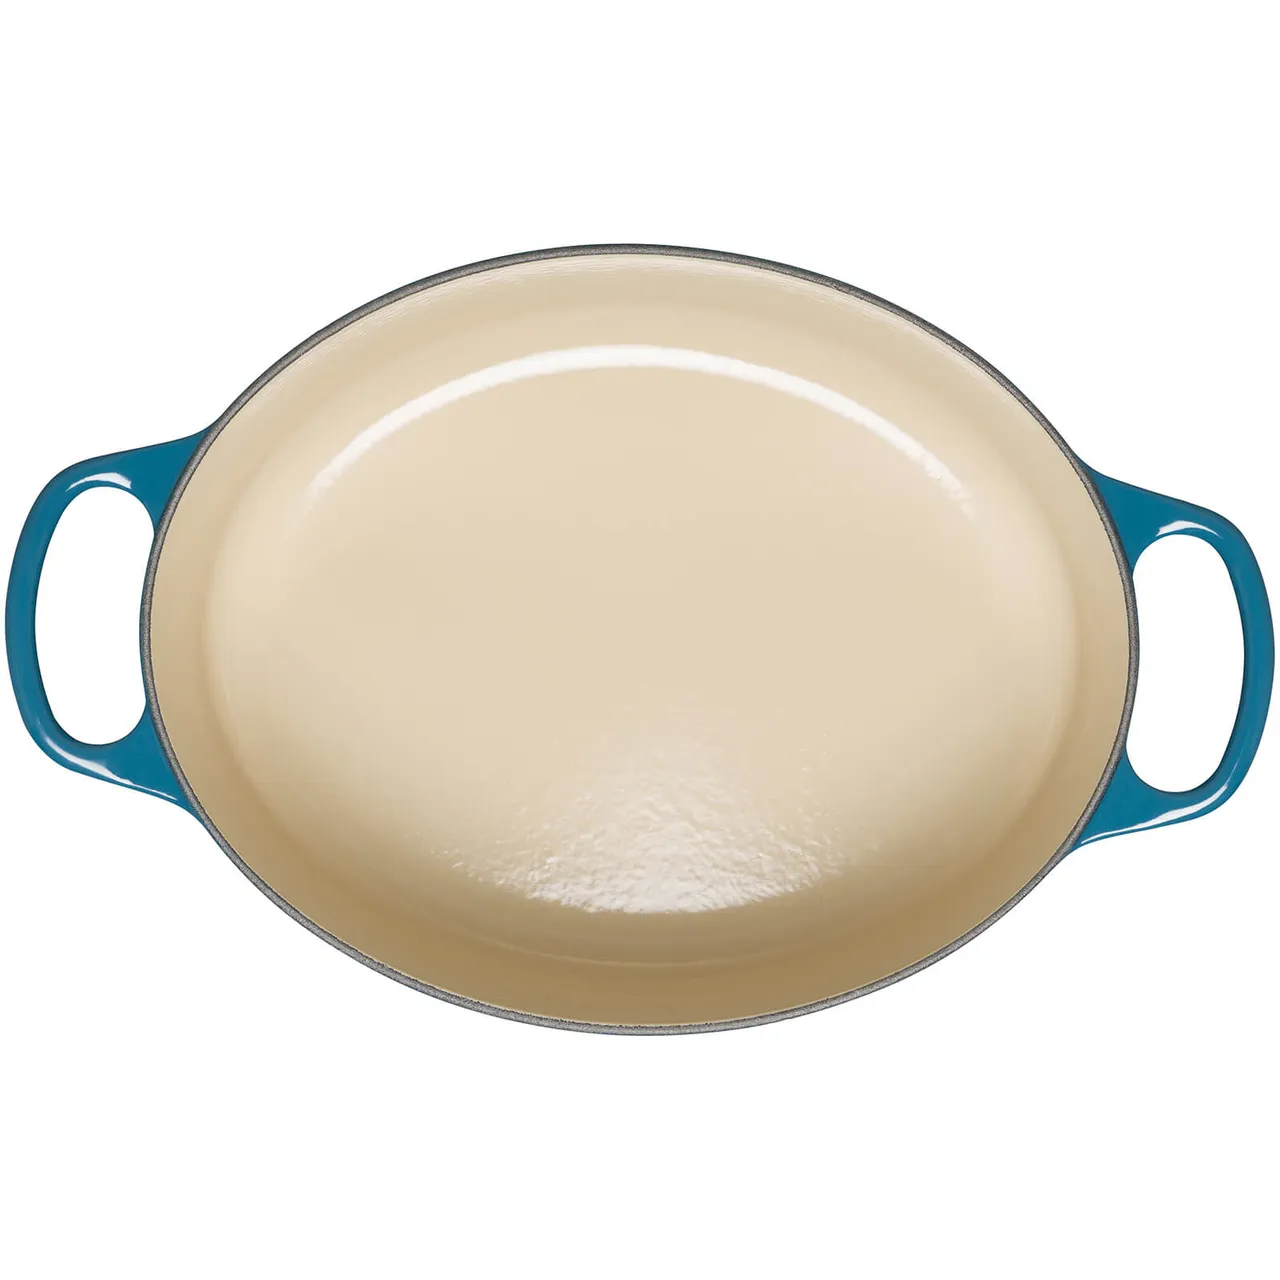 Le Creuset Signature Cast Iron Oval Casserole Dish - 27cm - Deep Teal